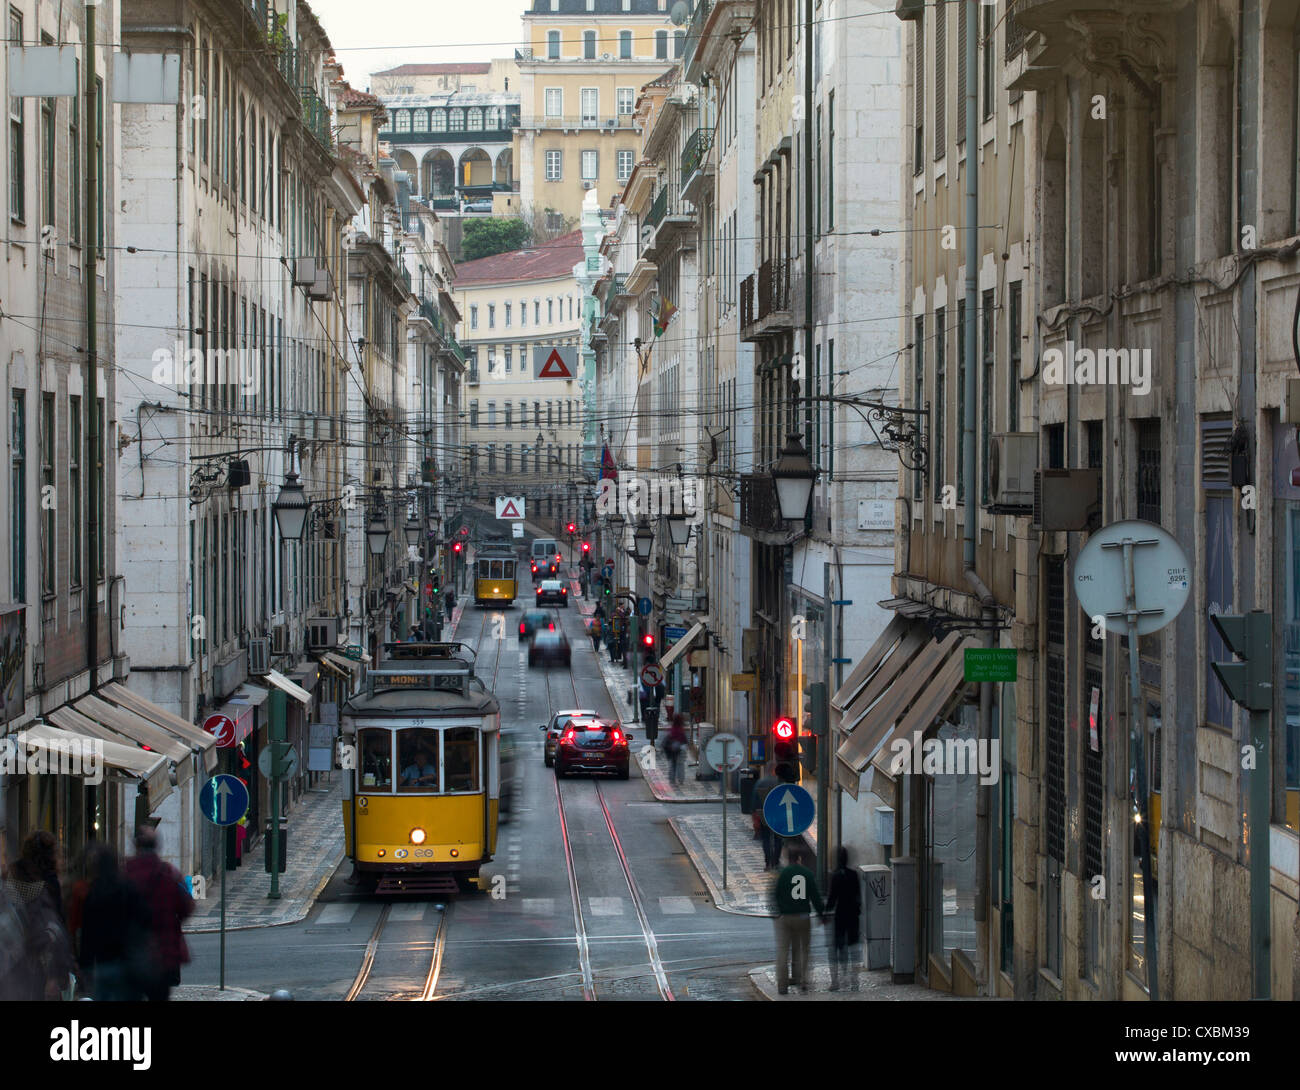 Straßenbahn in der alten Stadt, Lissabon, Portugal, Europa Stockfoto